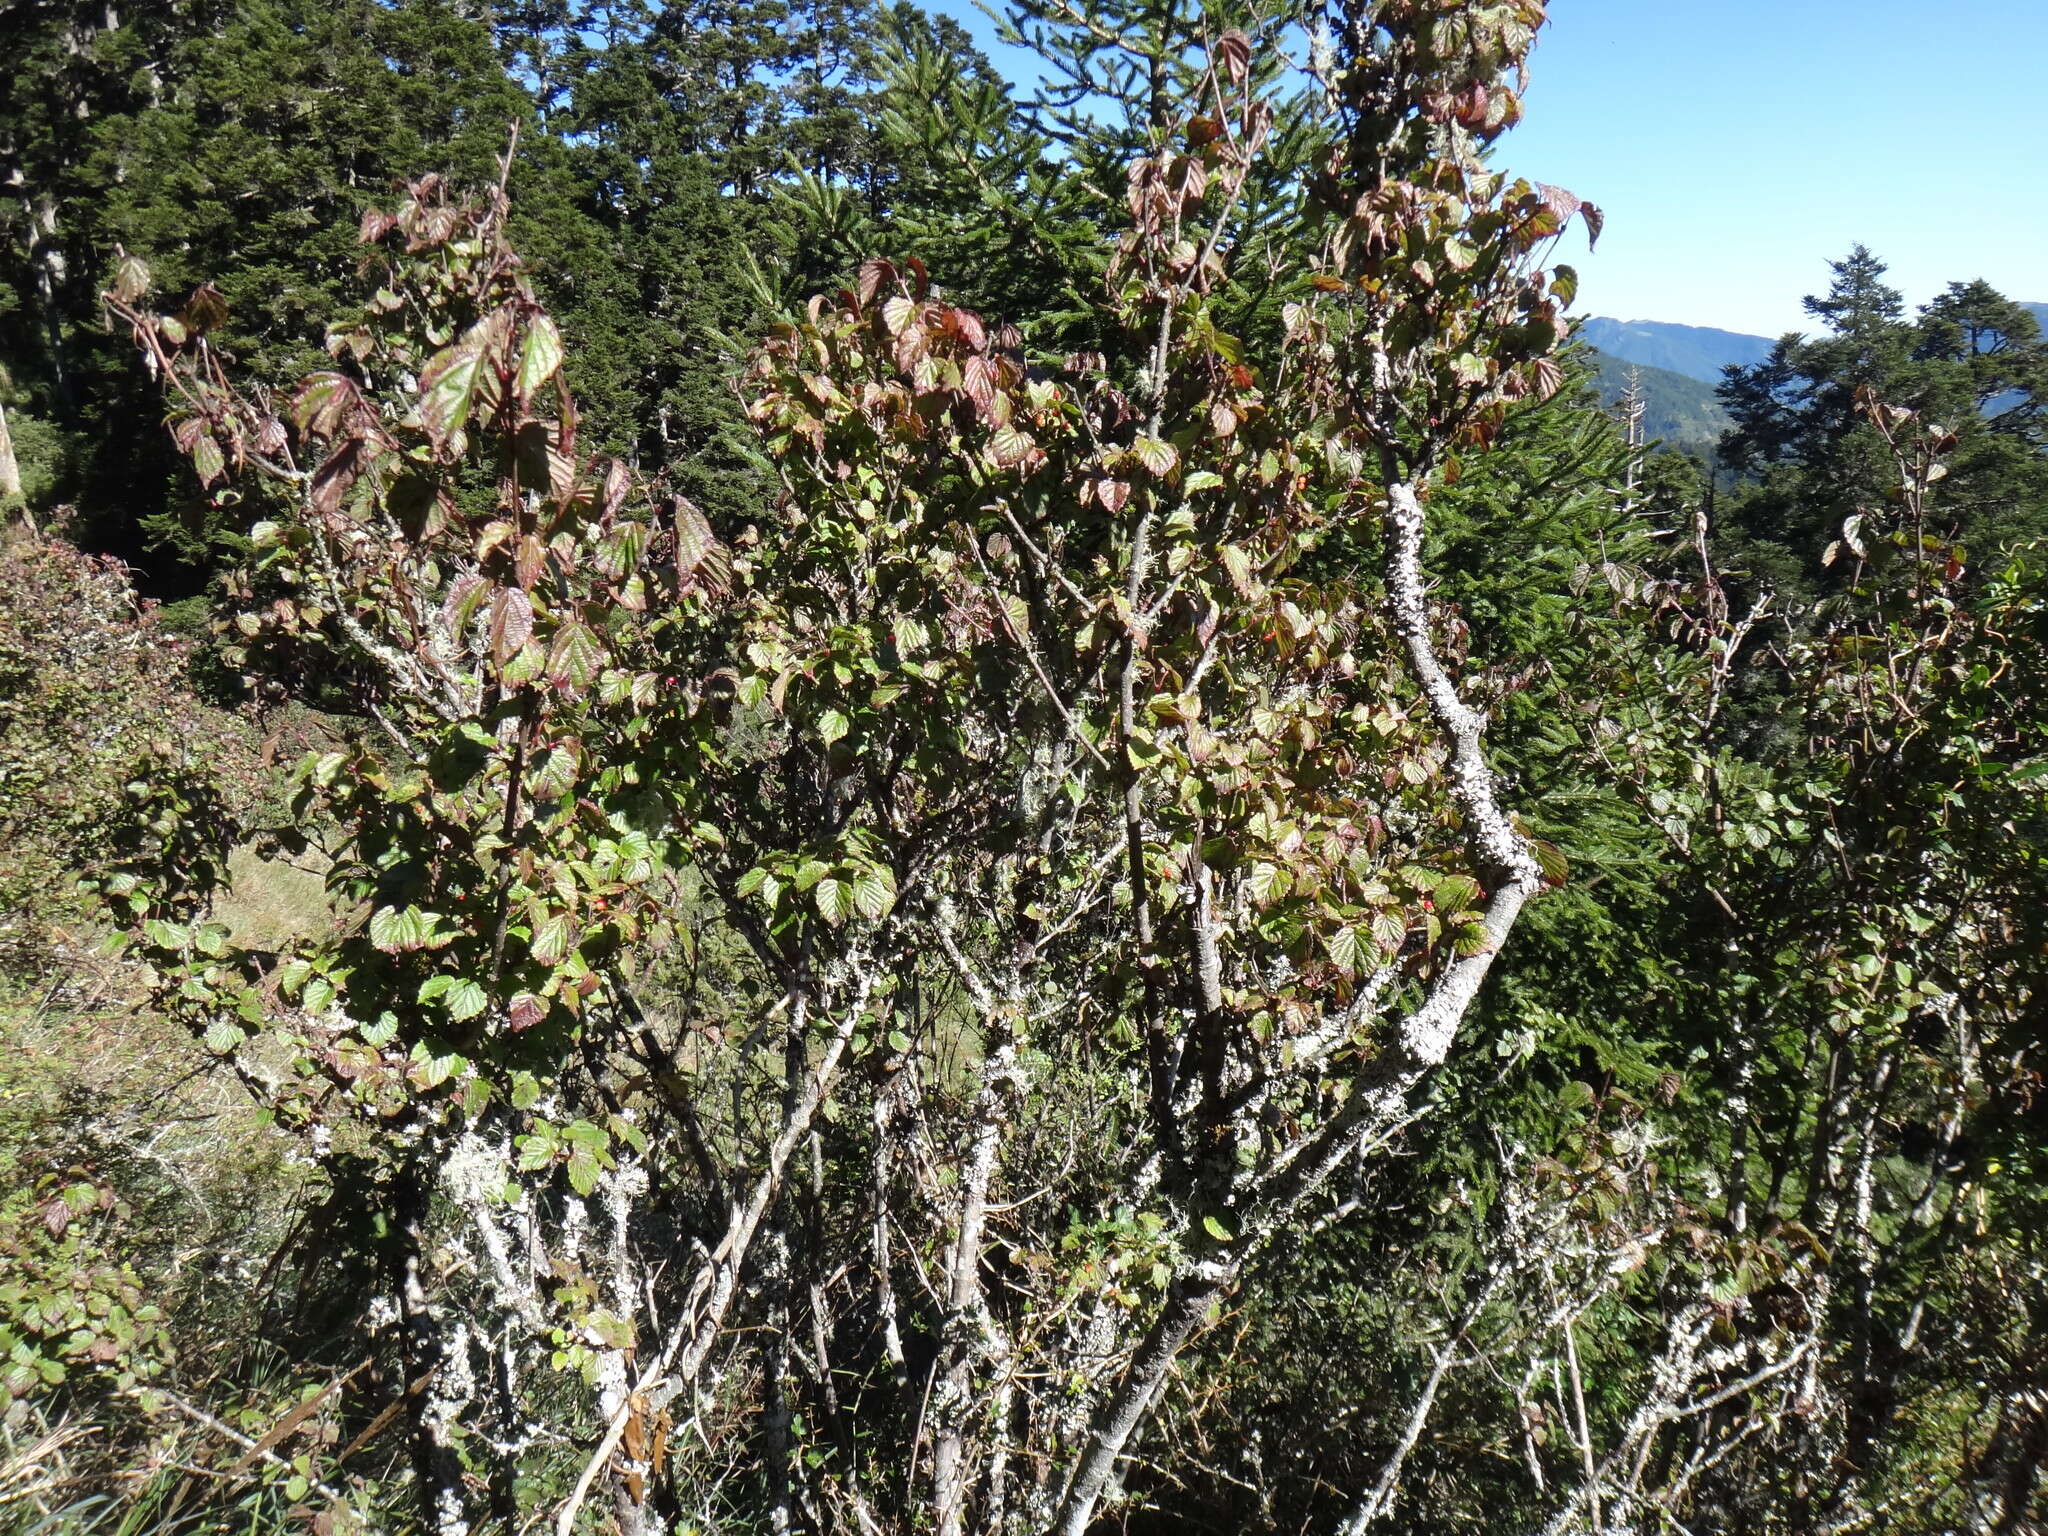 Image of Viburnum betulifolium Batalin